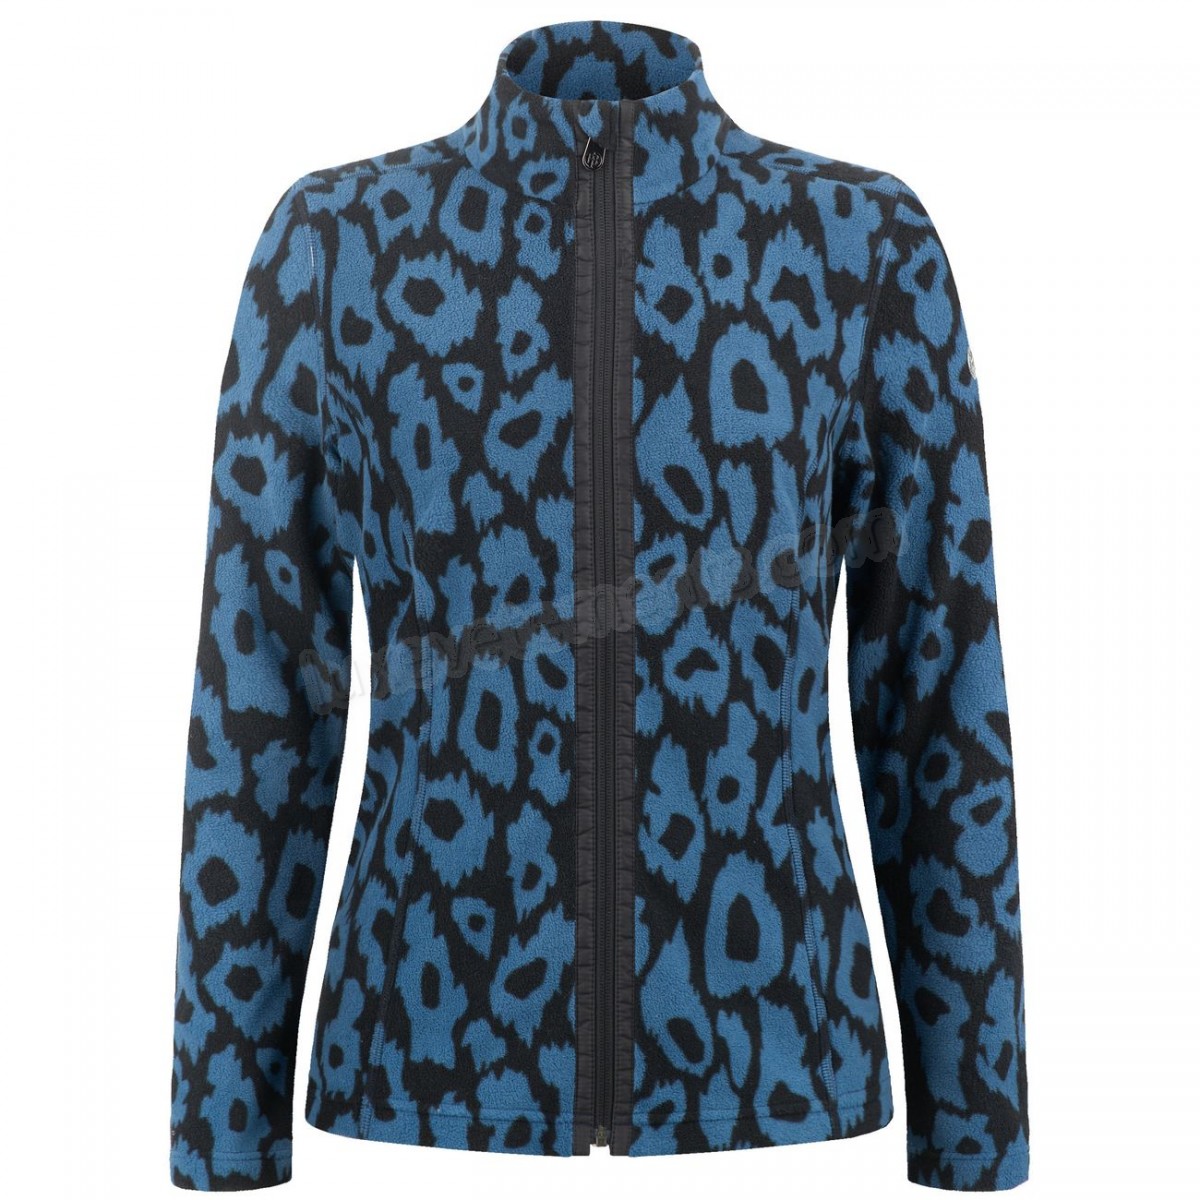 Poivre Blanc-Sports d'hiver femme POIVRE BLANC Veste Polaire Poivre Blanc Fleece Jacket 1500 Panther Blue Femme Vente en ligne - -2